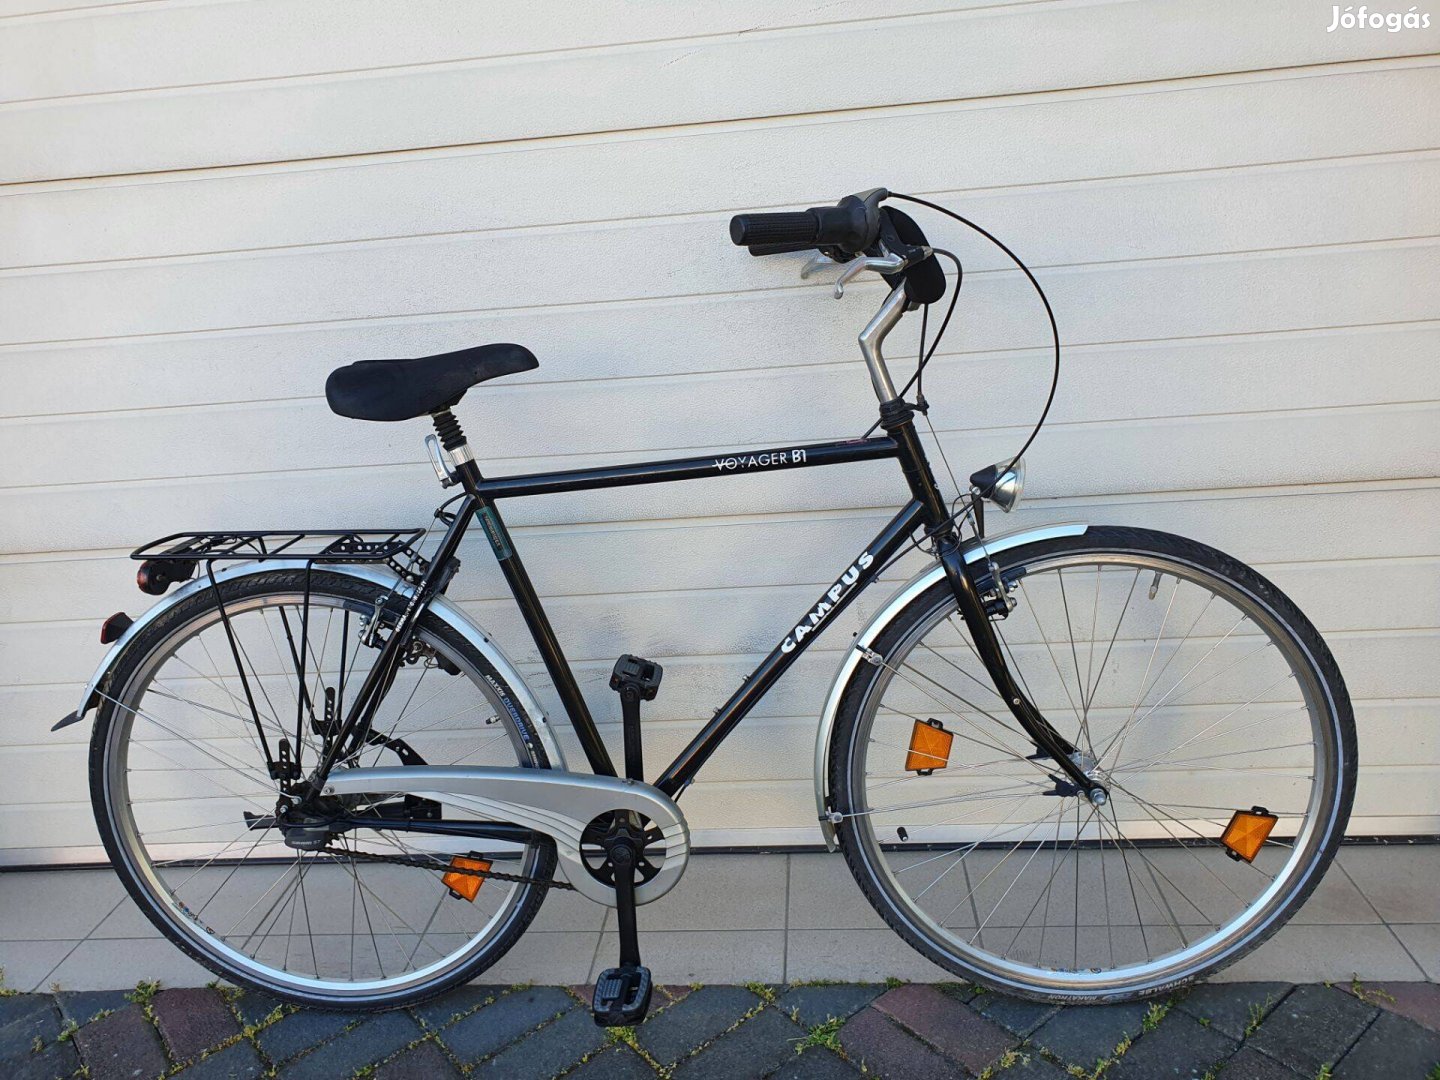 Campus Voyager BT Férfi kerékpár eladó